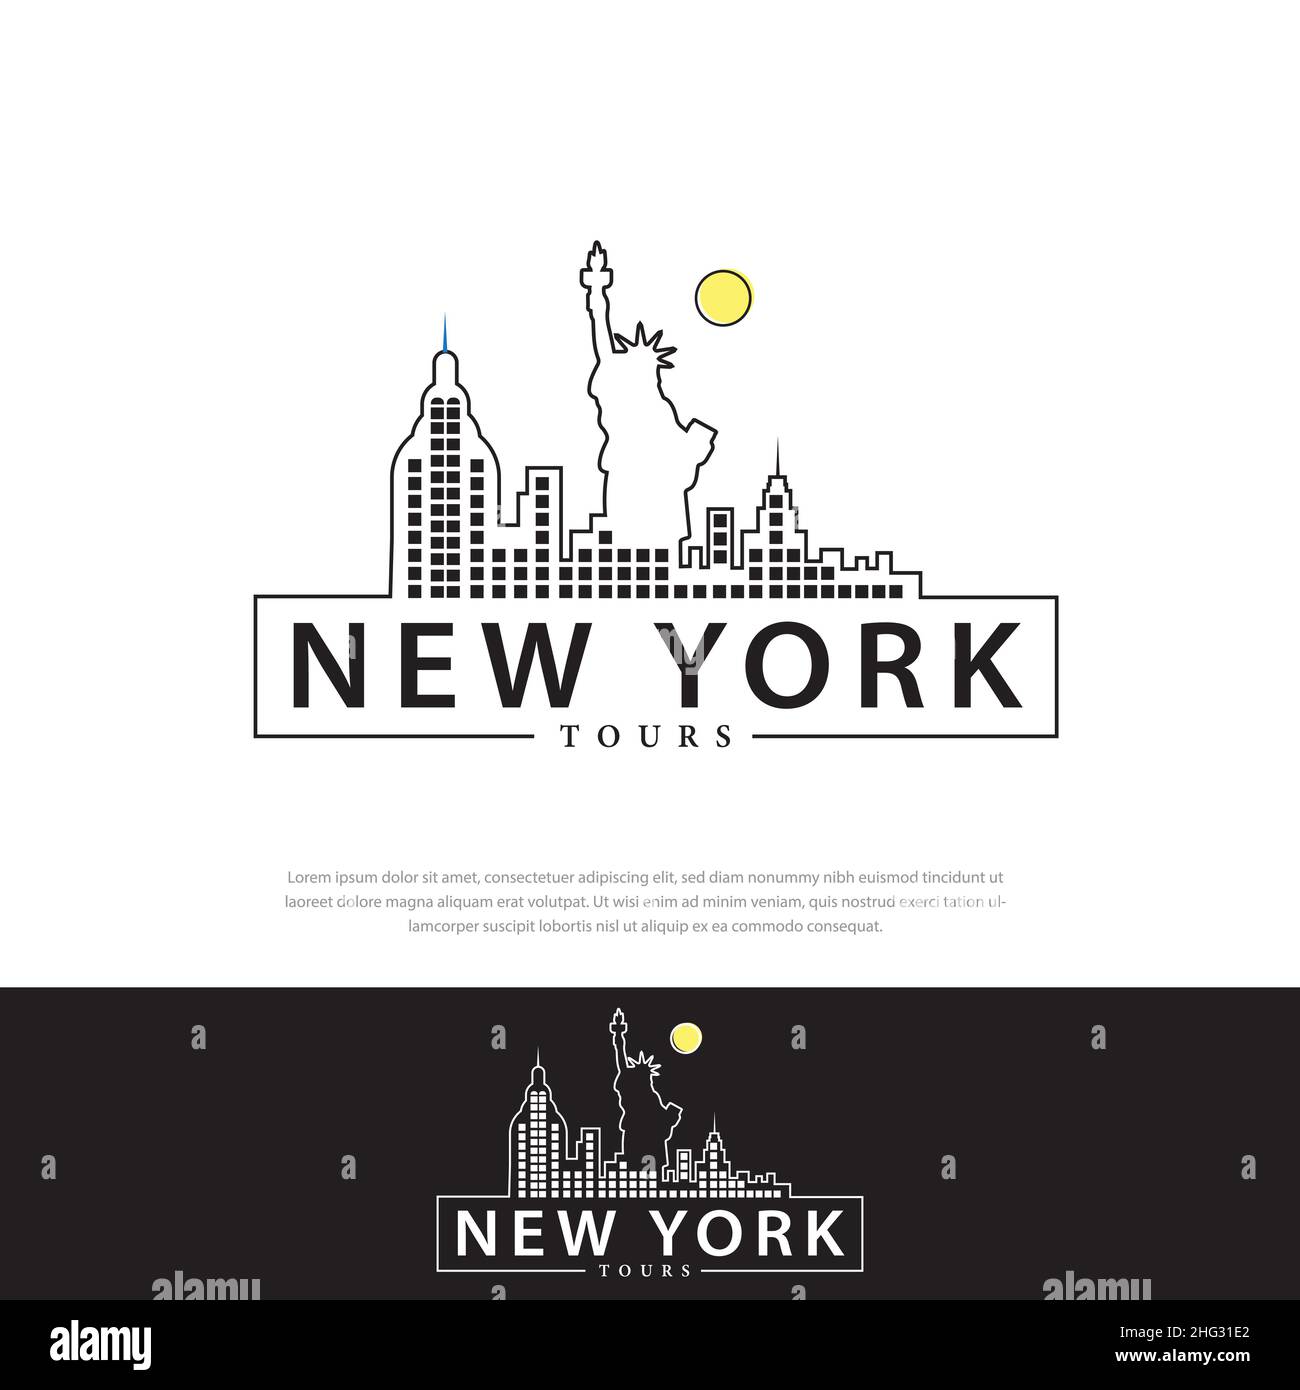 Logo-Design Grafische Illustration von New York City mit verschiedenen berühmten Gebäuden und Sehenswürdigkeiten. Modernes Vektorlinien-Kunstdesign. Stock Vektor